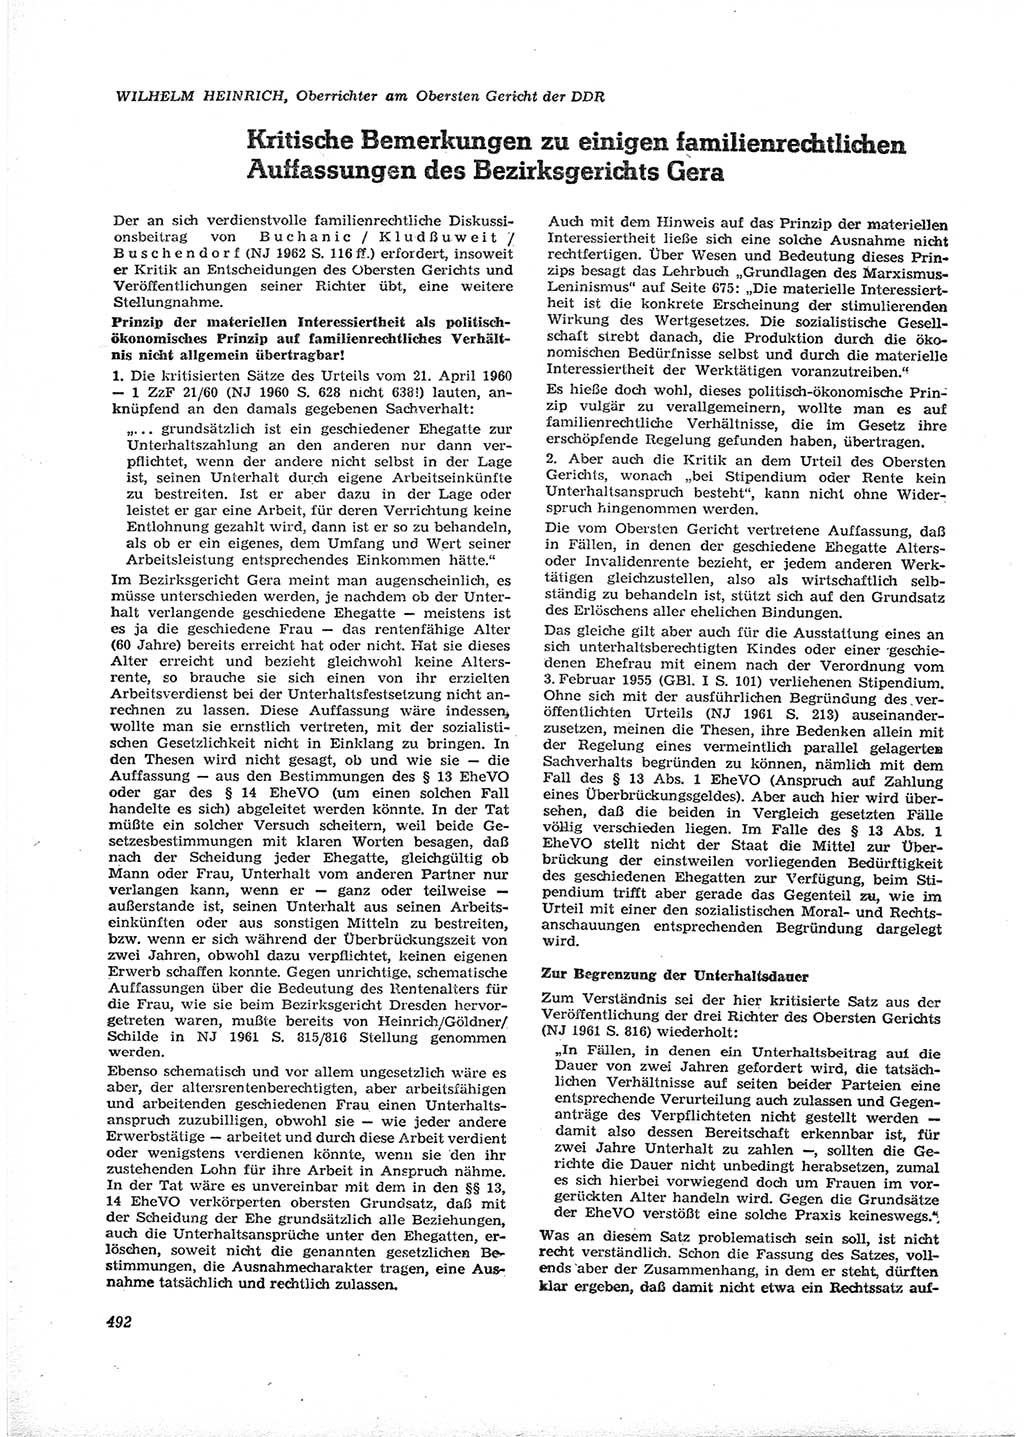 Neue Justiz (NJ), Zeitschrift für Recht und Rechtswissenschaft [Deutsche Demokratische Republik (DDR)], 16. Jahrgang 1962, Seite 492 (NJ DDR 1962, S. 492)